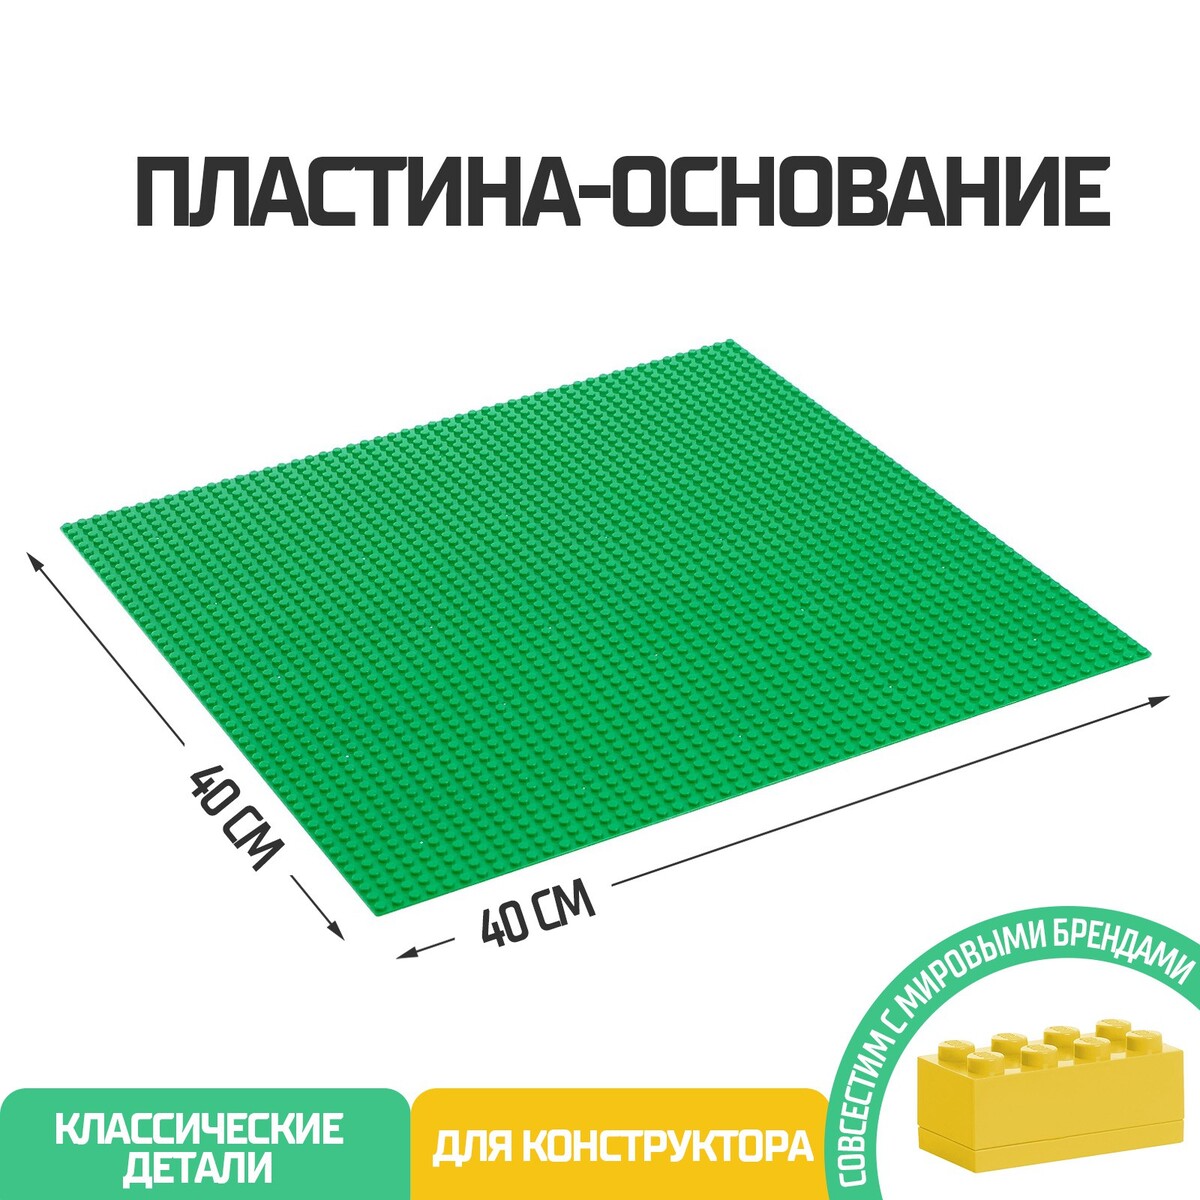 Пластина-основание для конструктора, 40 х 40 см, цвет зеленый пластина основание для конструктора 40 × 40 см салатовый